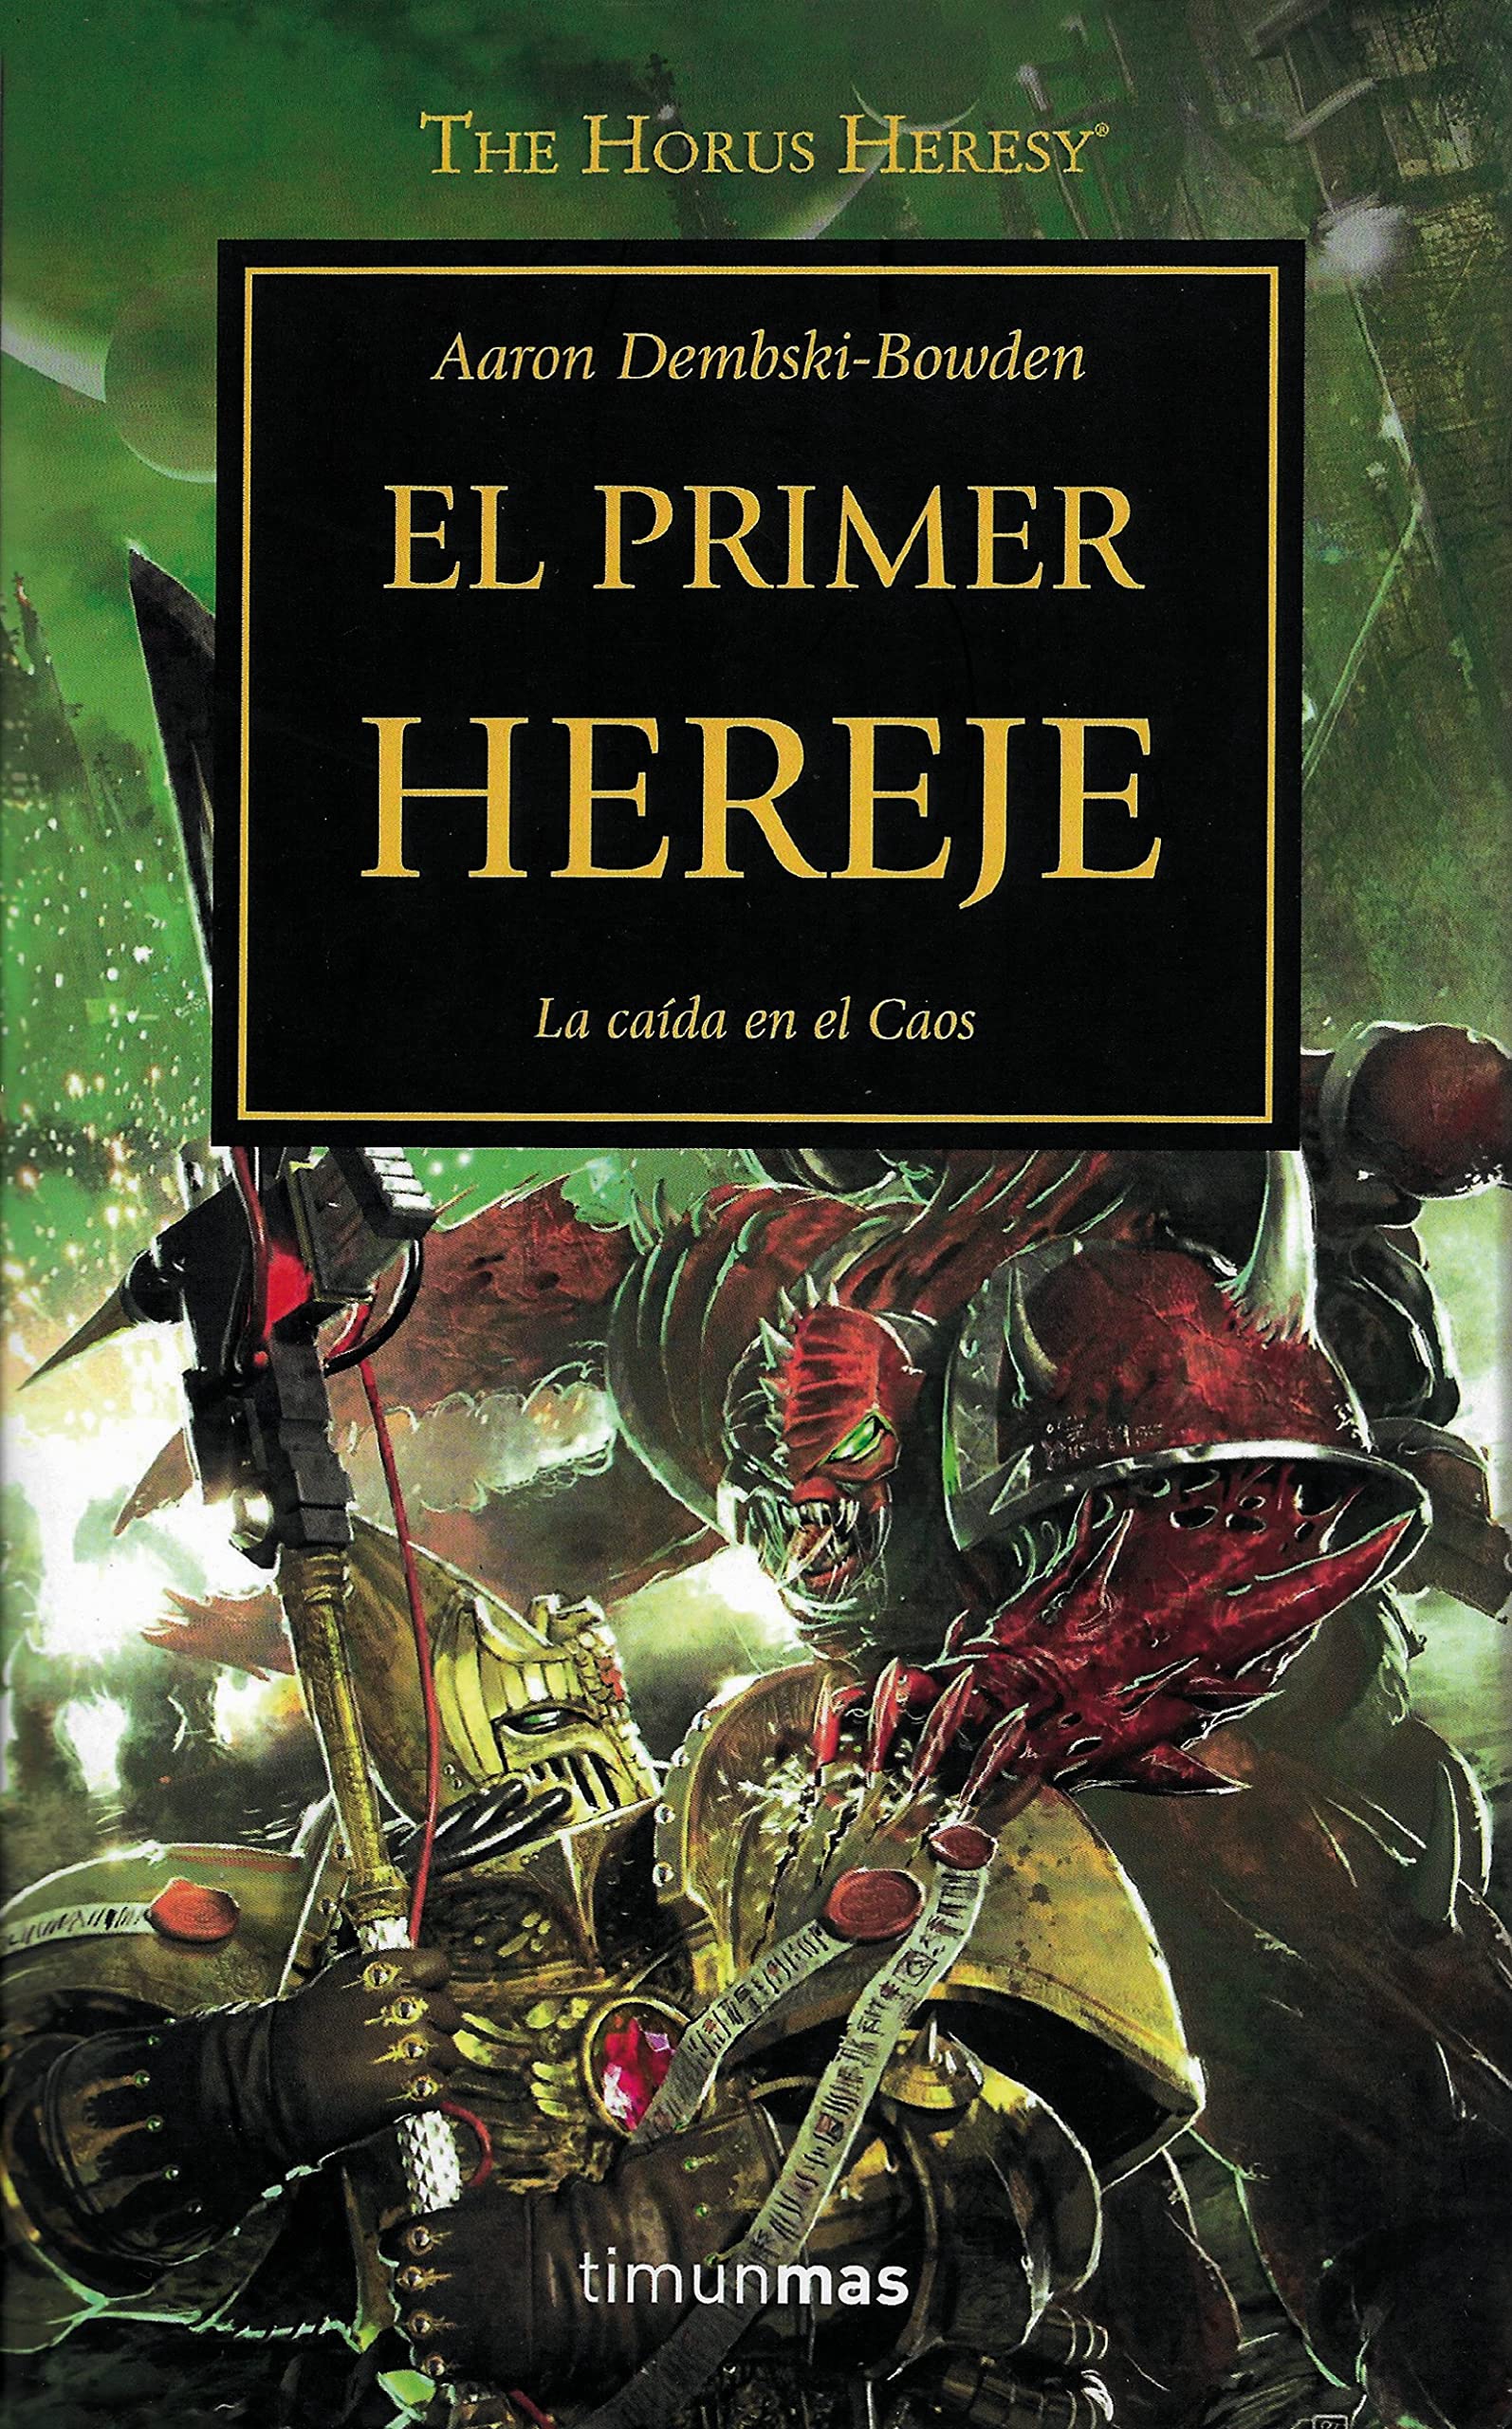 Libro: El Primer Hereje, La Caída en el Caos - Libro 14 de 54: Warhammer The Horus Heresy por Aaron Dembski-Bowden